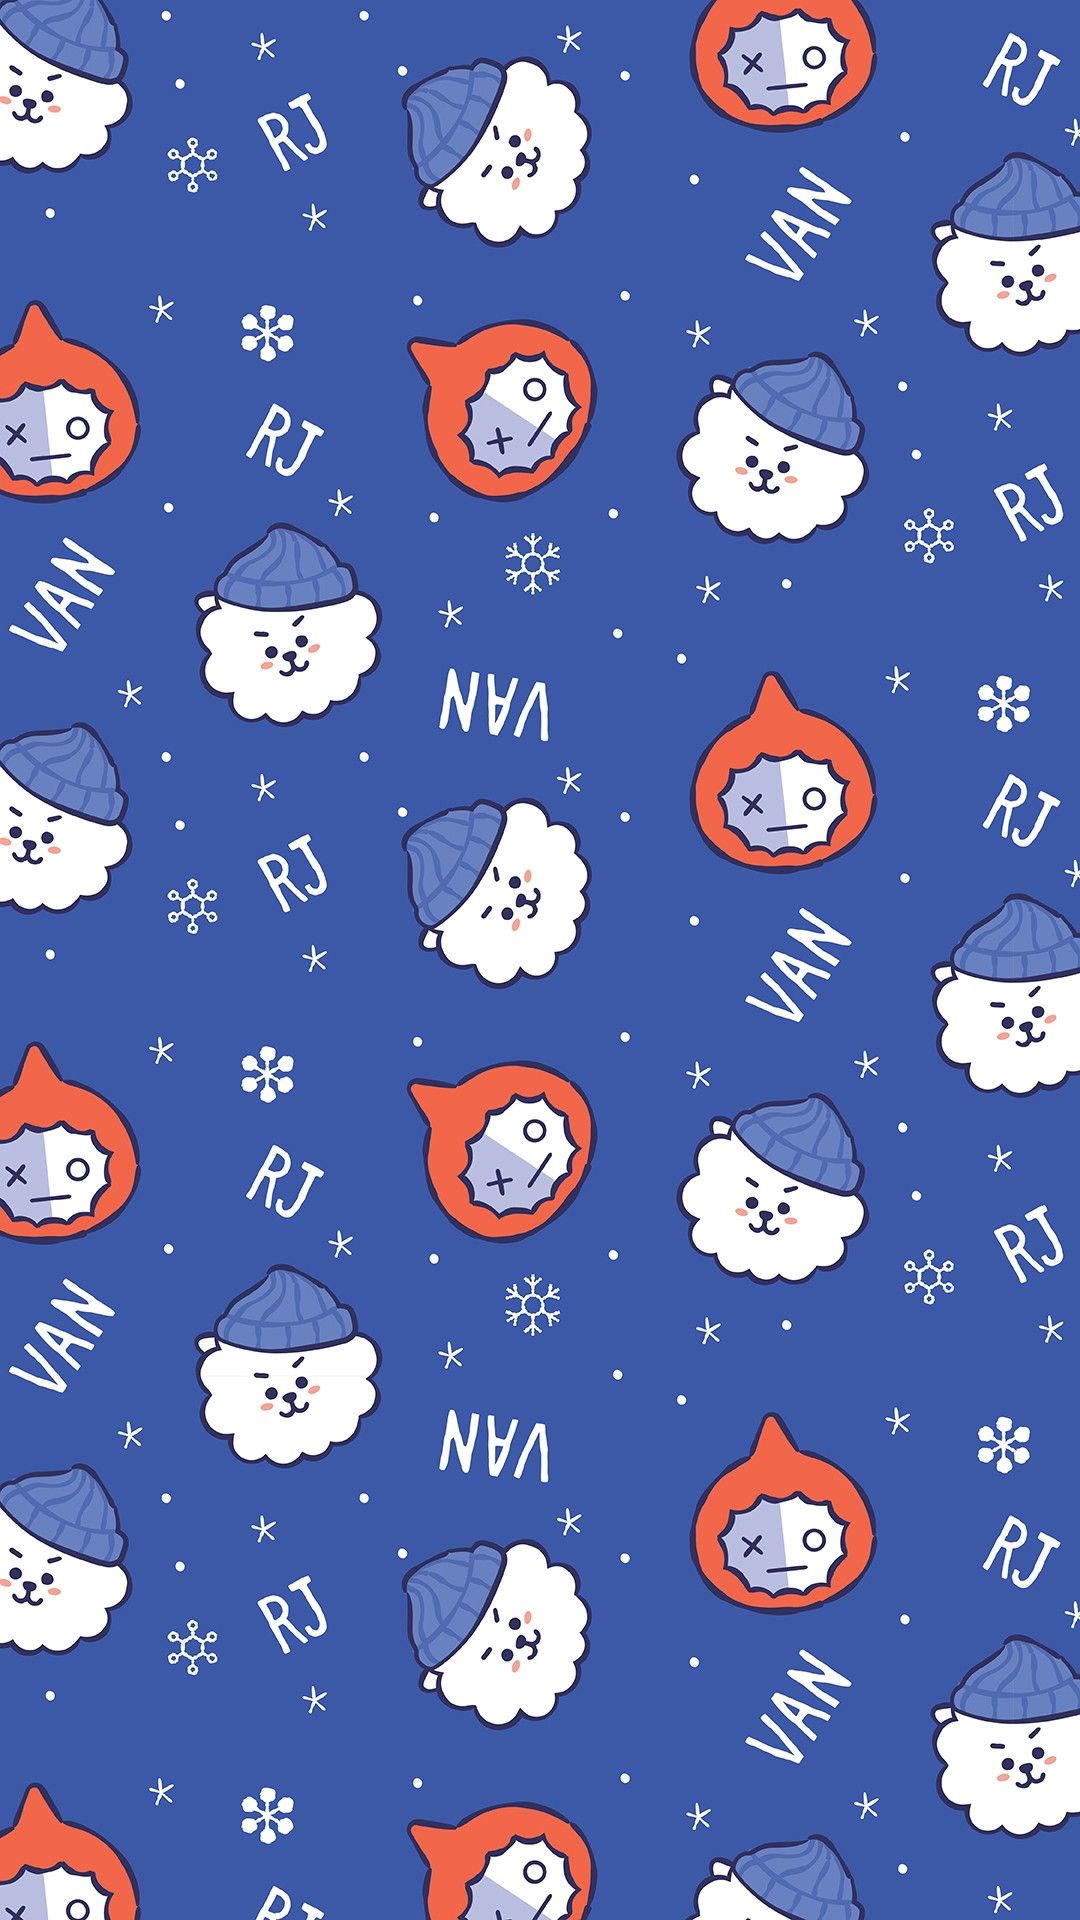 #rj #van #let It Snow #wallpaper #hd #lockscreen #linefriends - Bt21 Christmas , HD Wallpaper & Backgrounds